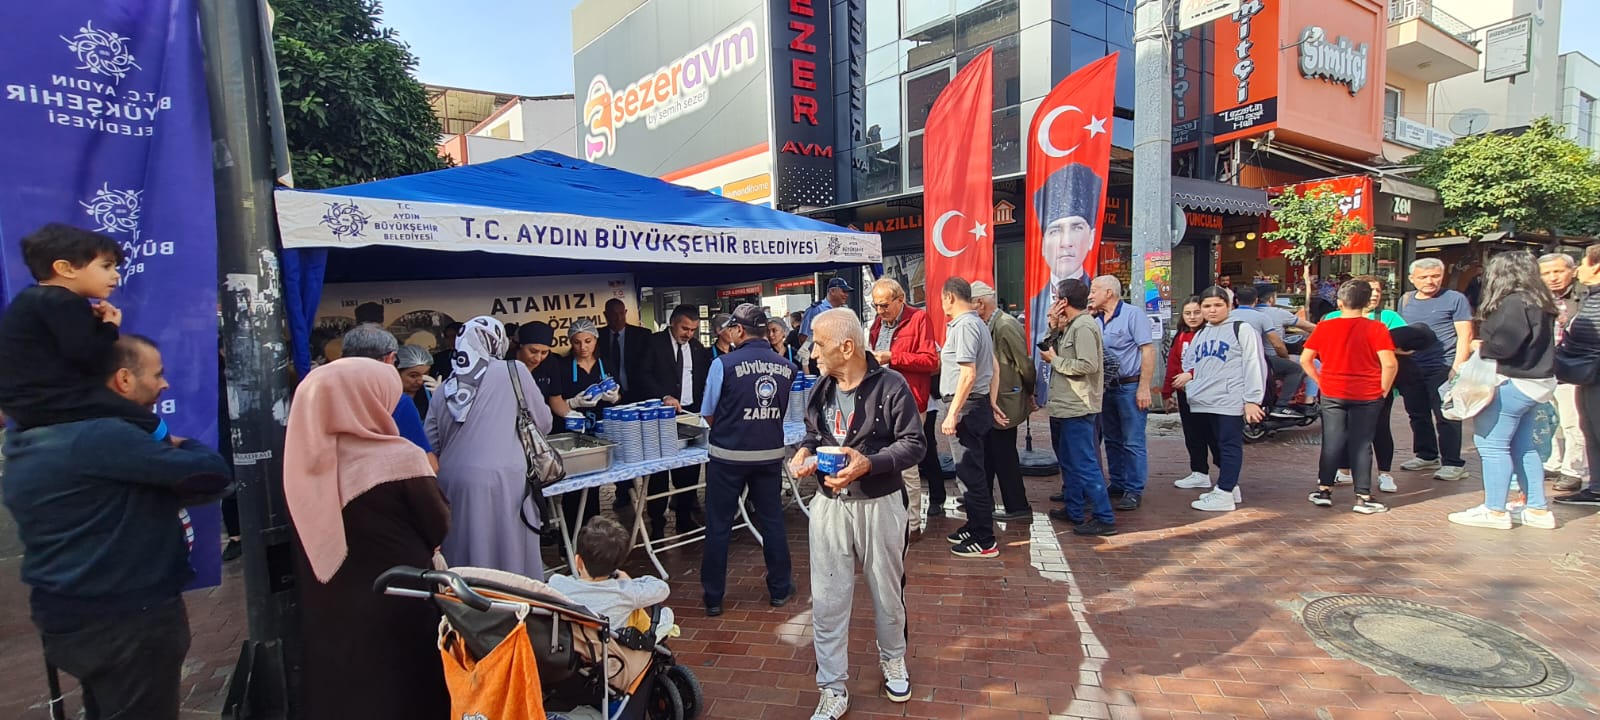 Aydın Büyükşehir Belediyesi Mustafa Kemal Atatürk için hayır gerçekleştirdi